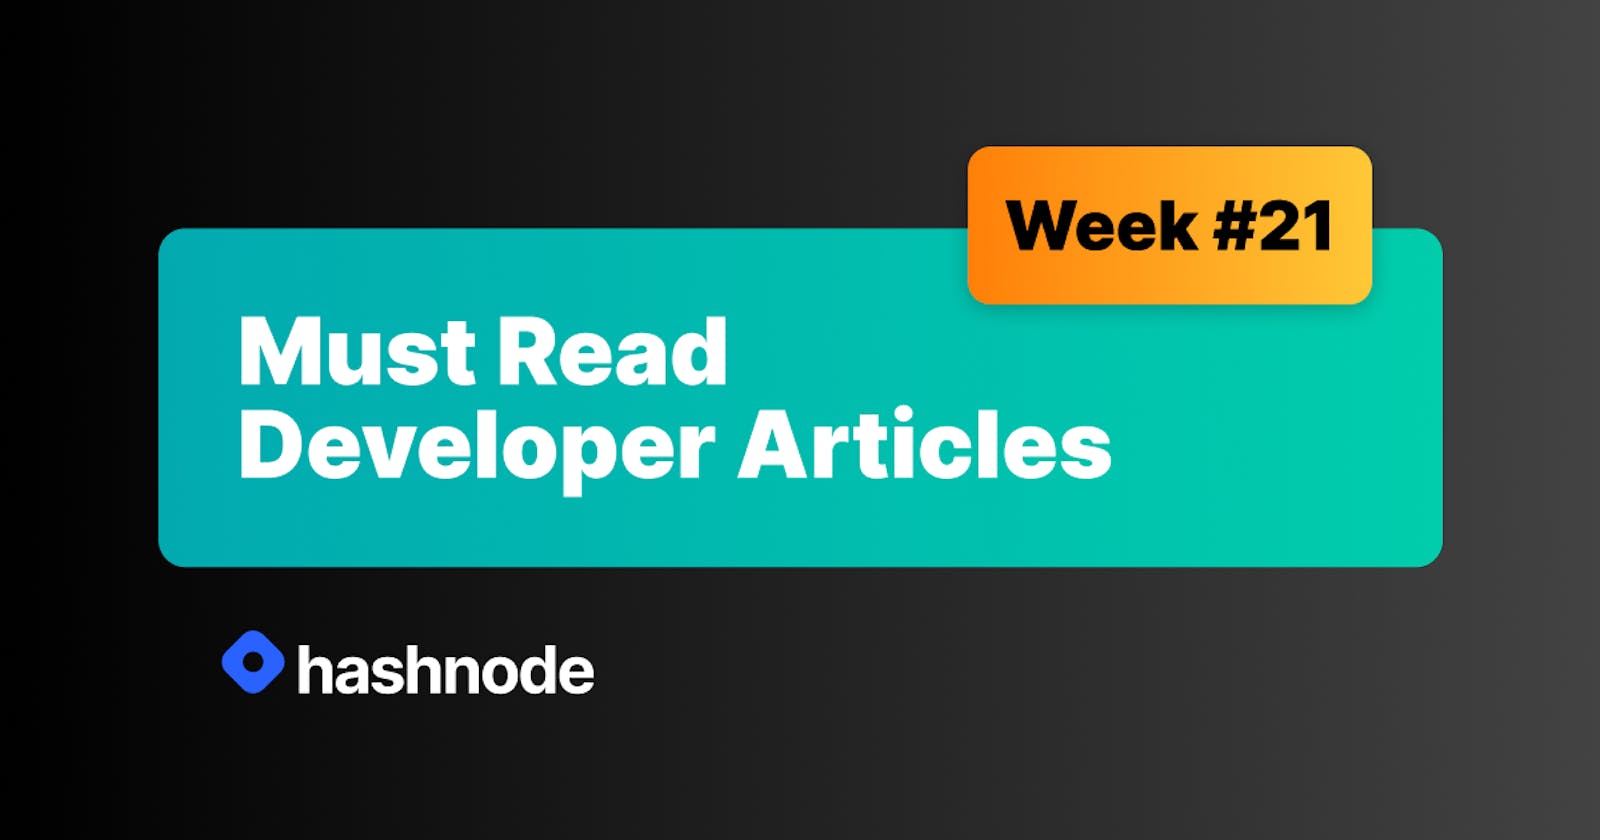 Must Read Developer Articles on Hashnode - #21